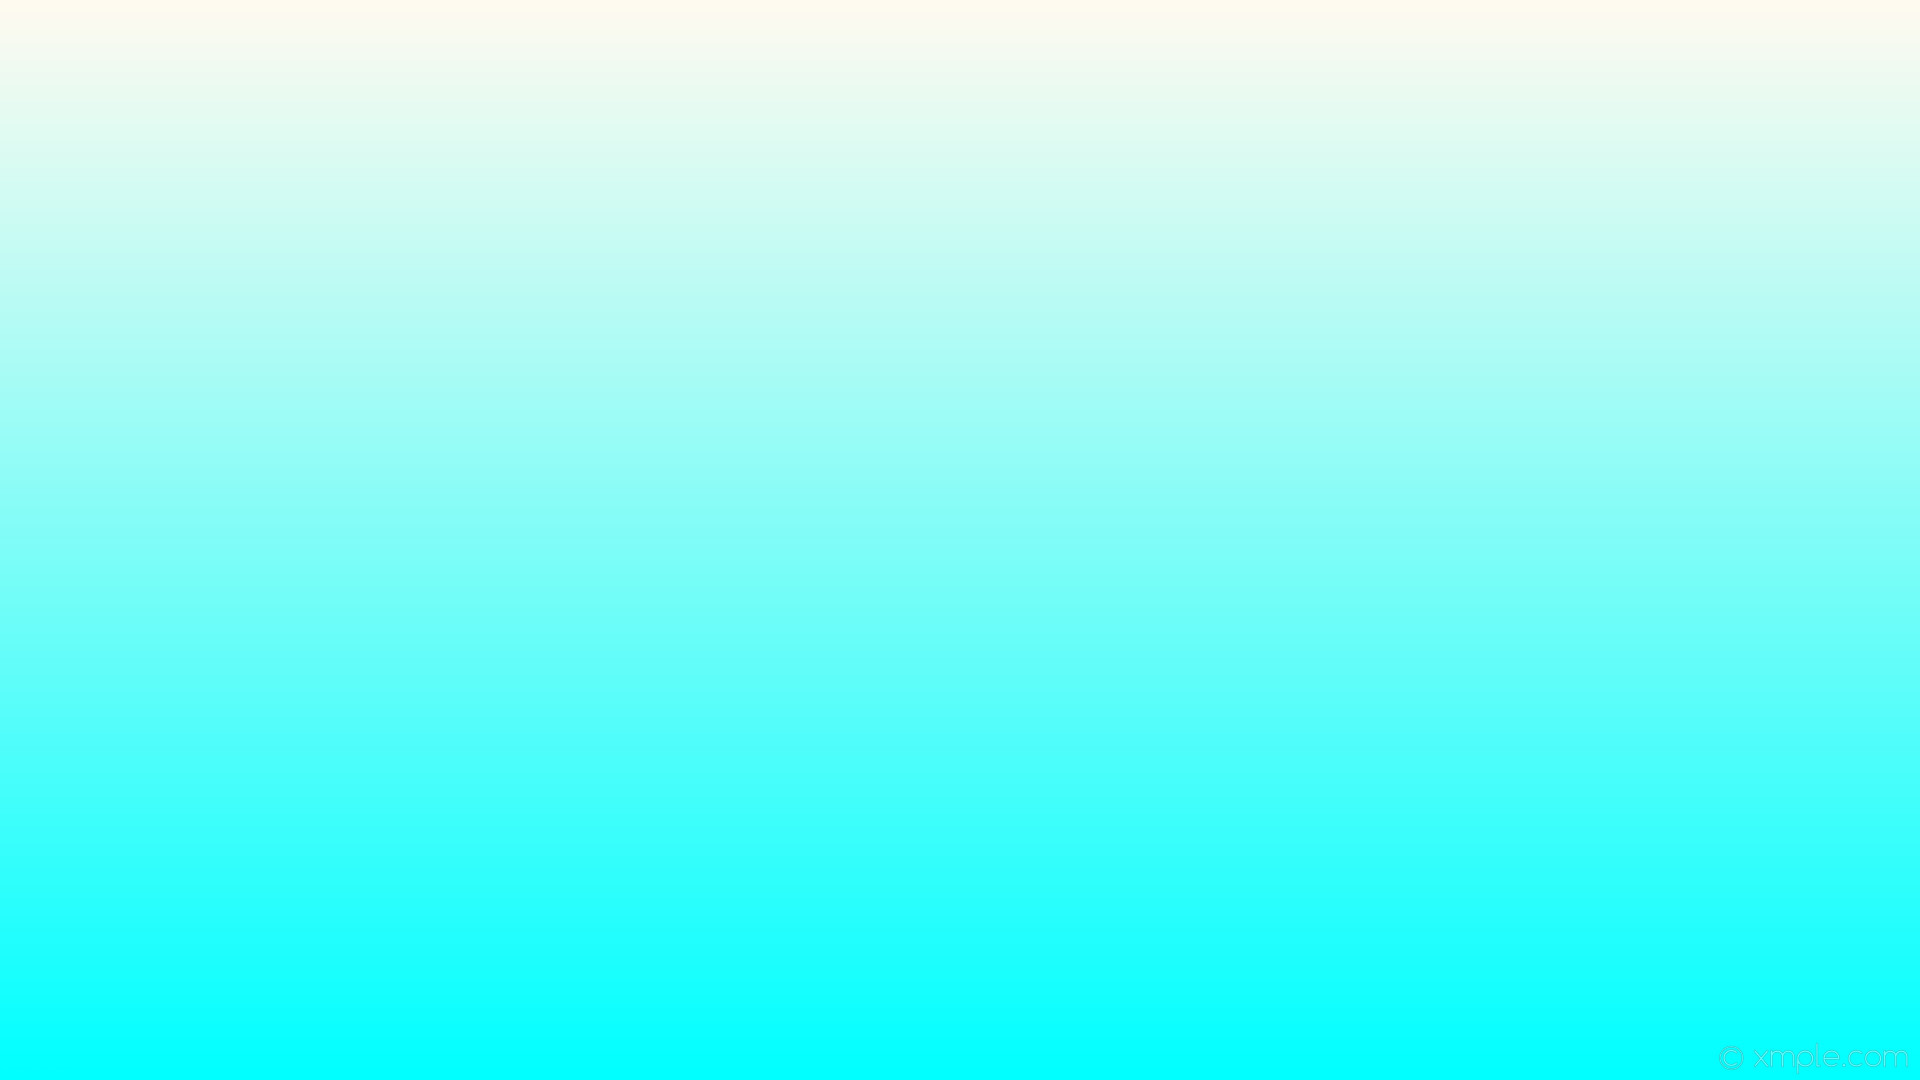 1920x1080 wallpaper blue gradient white linear floral white aqua cyan #fffaf0 #00ffff  90Â°